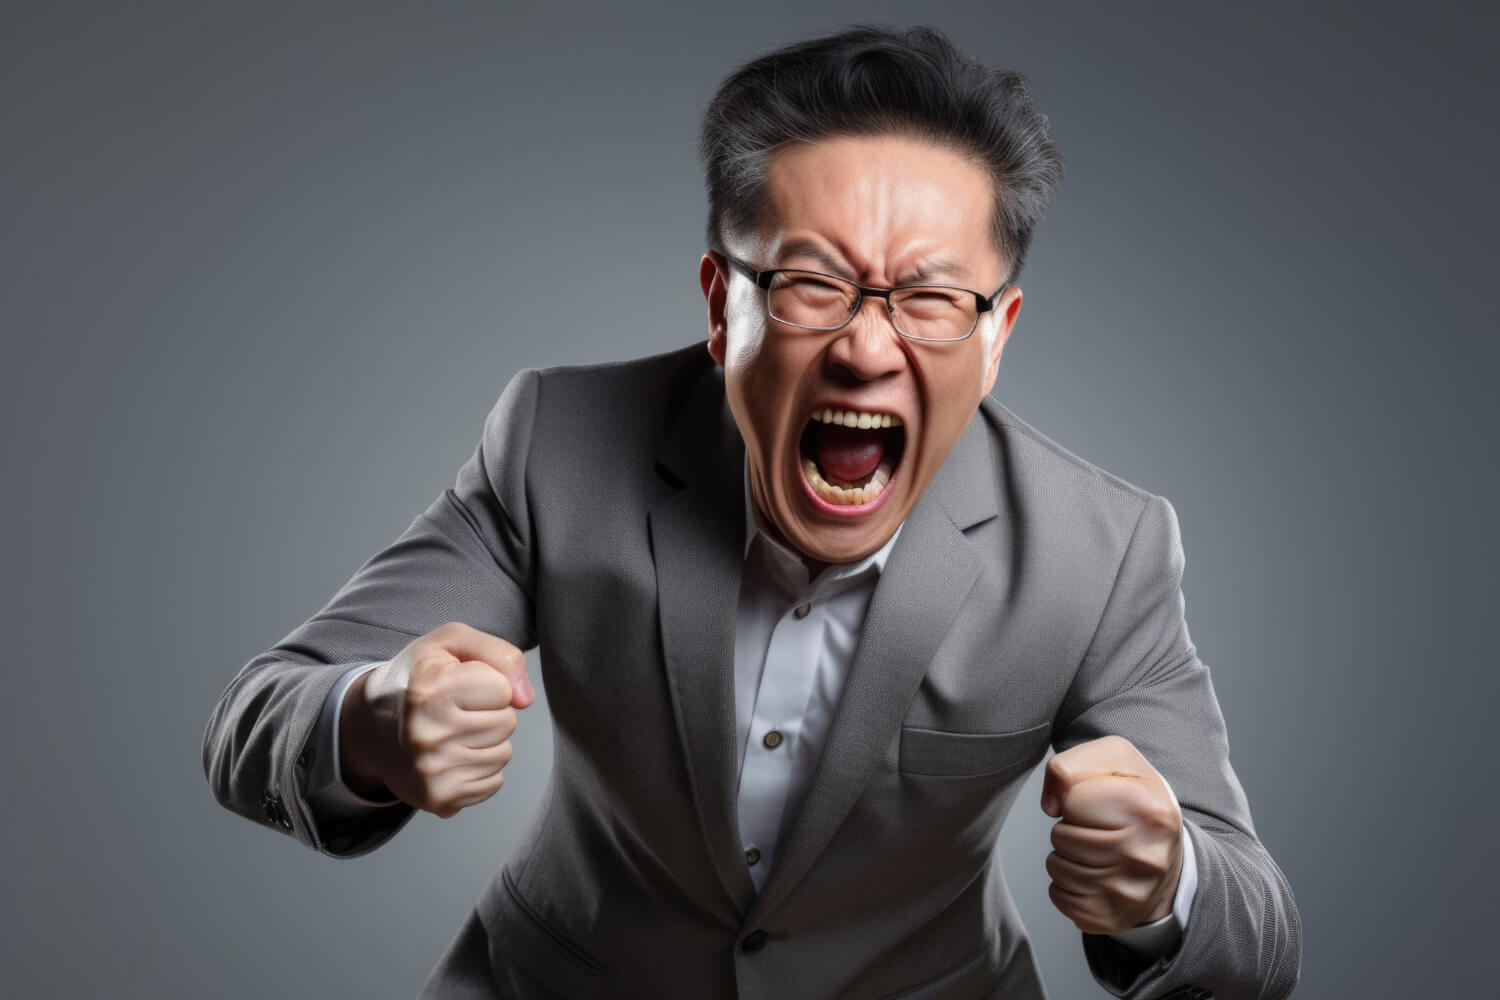 Mengelola Emosi: Tips Meredakan Rasa Marah Secara Cepat untuk Menghindari Konflik